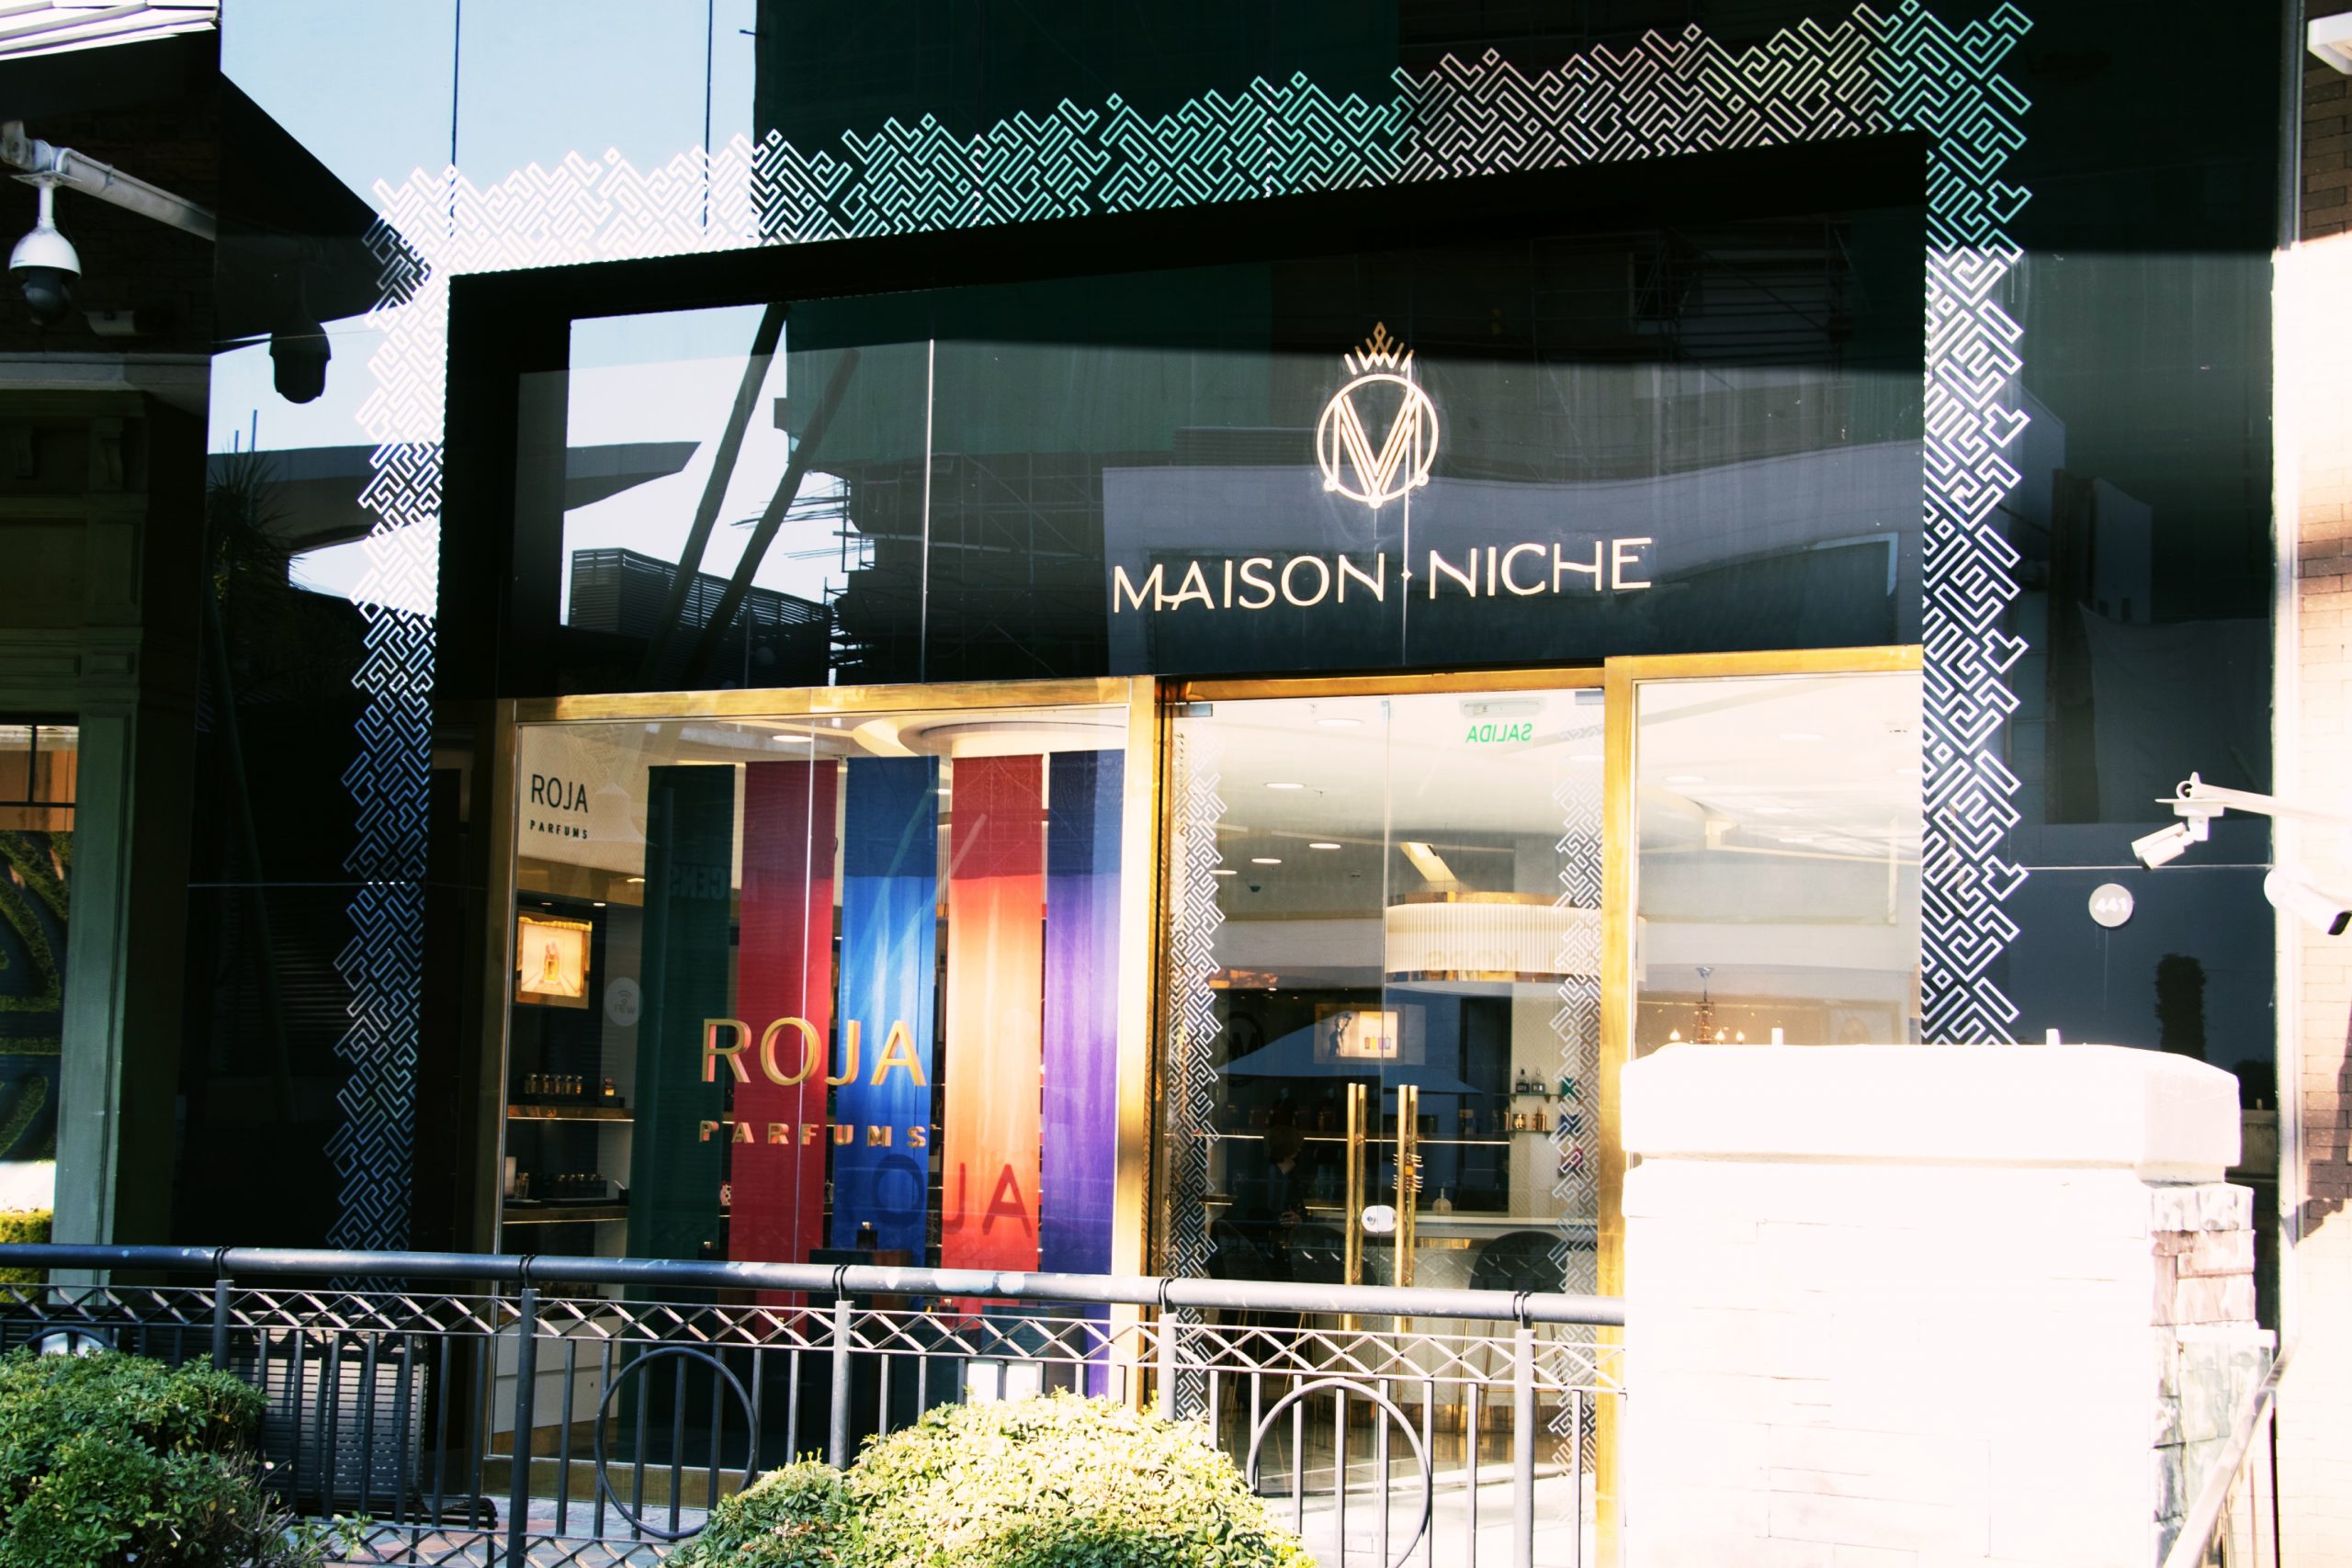 Maison Niche: La última tendencia en fragancias “over the luxe”